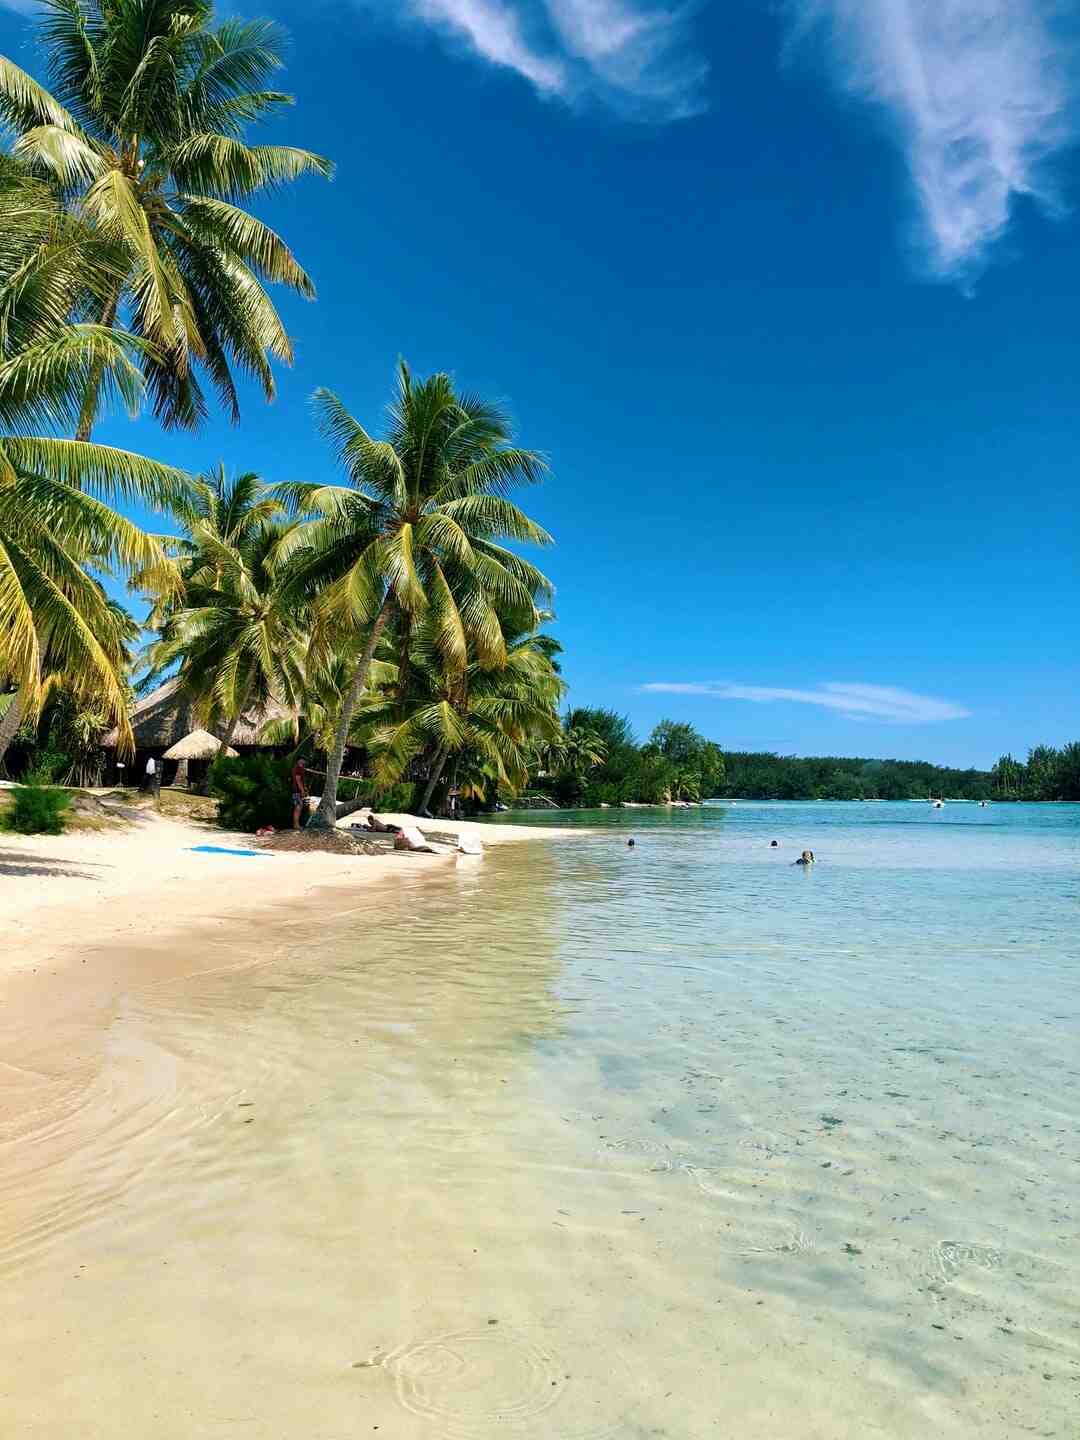 How to go to Tahiti?